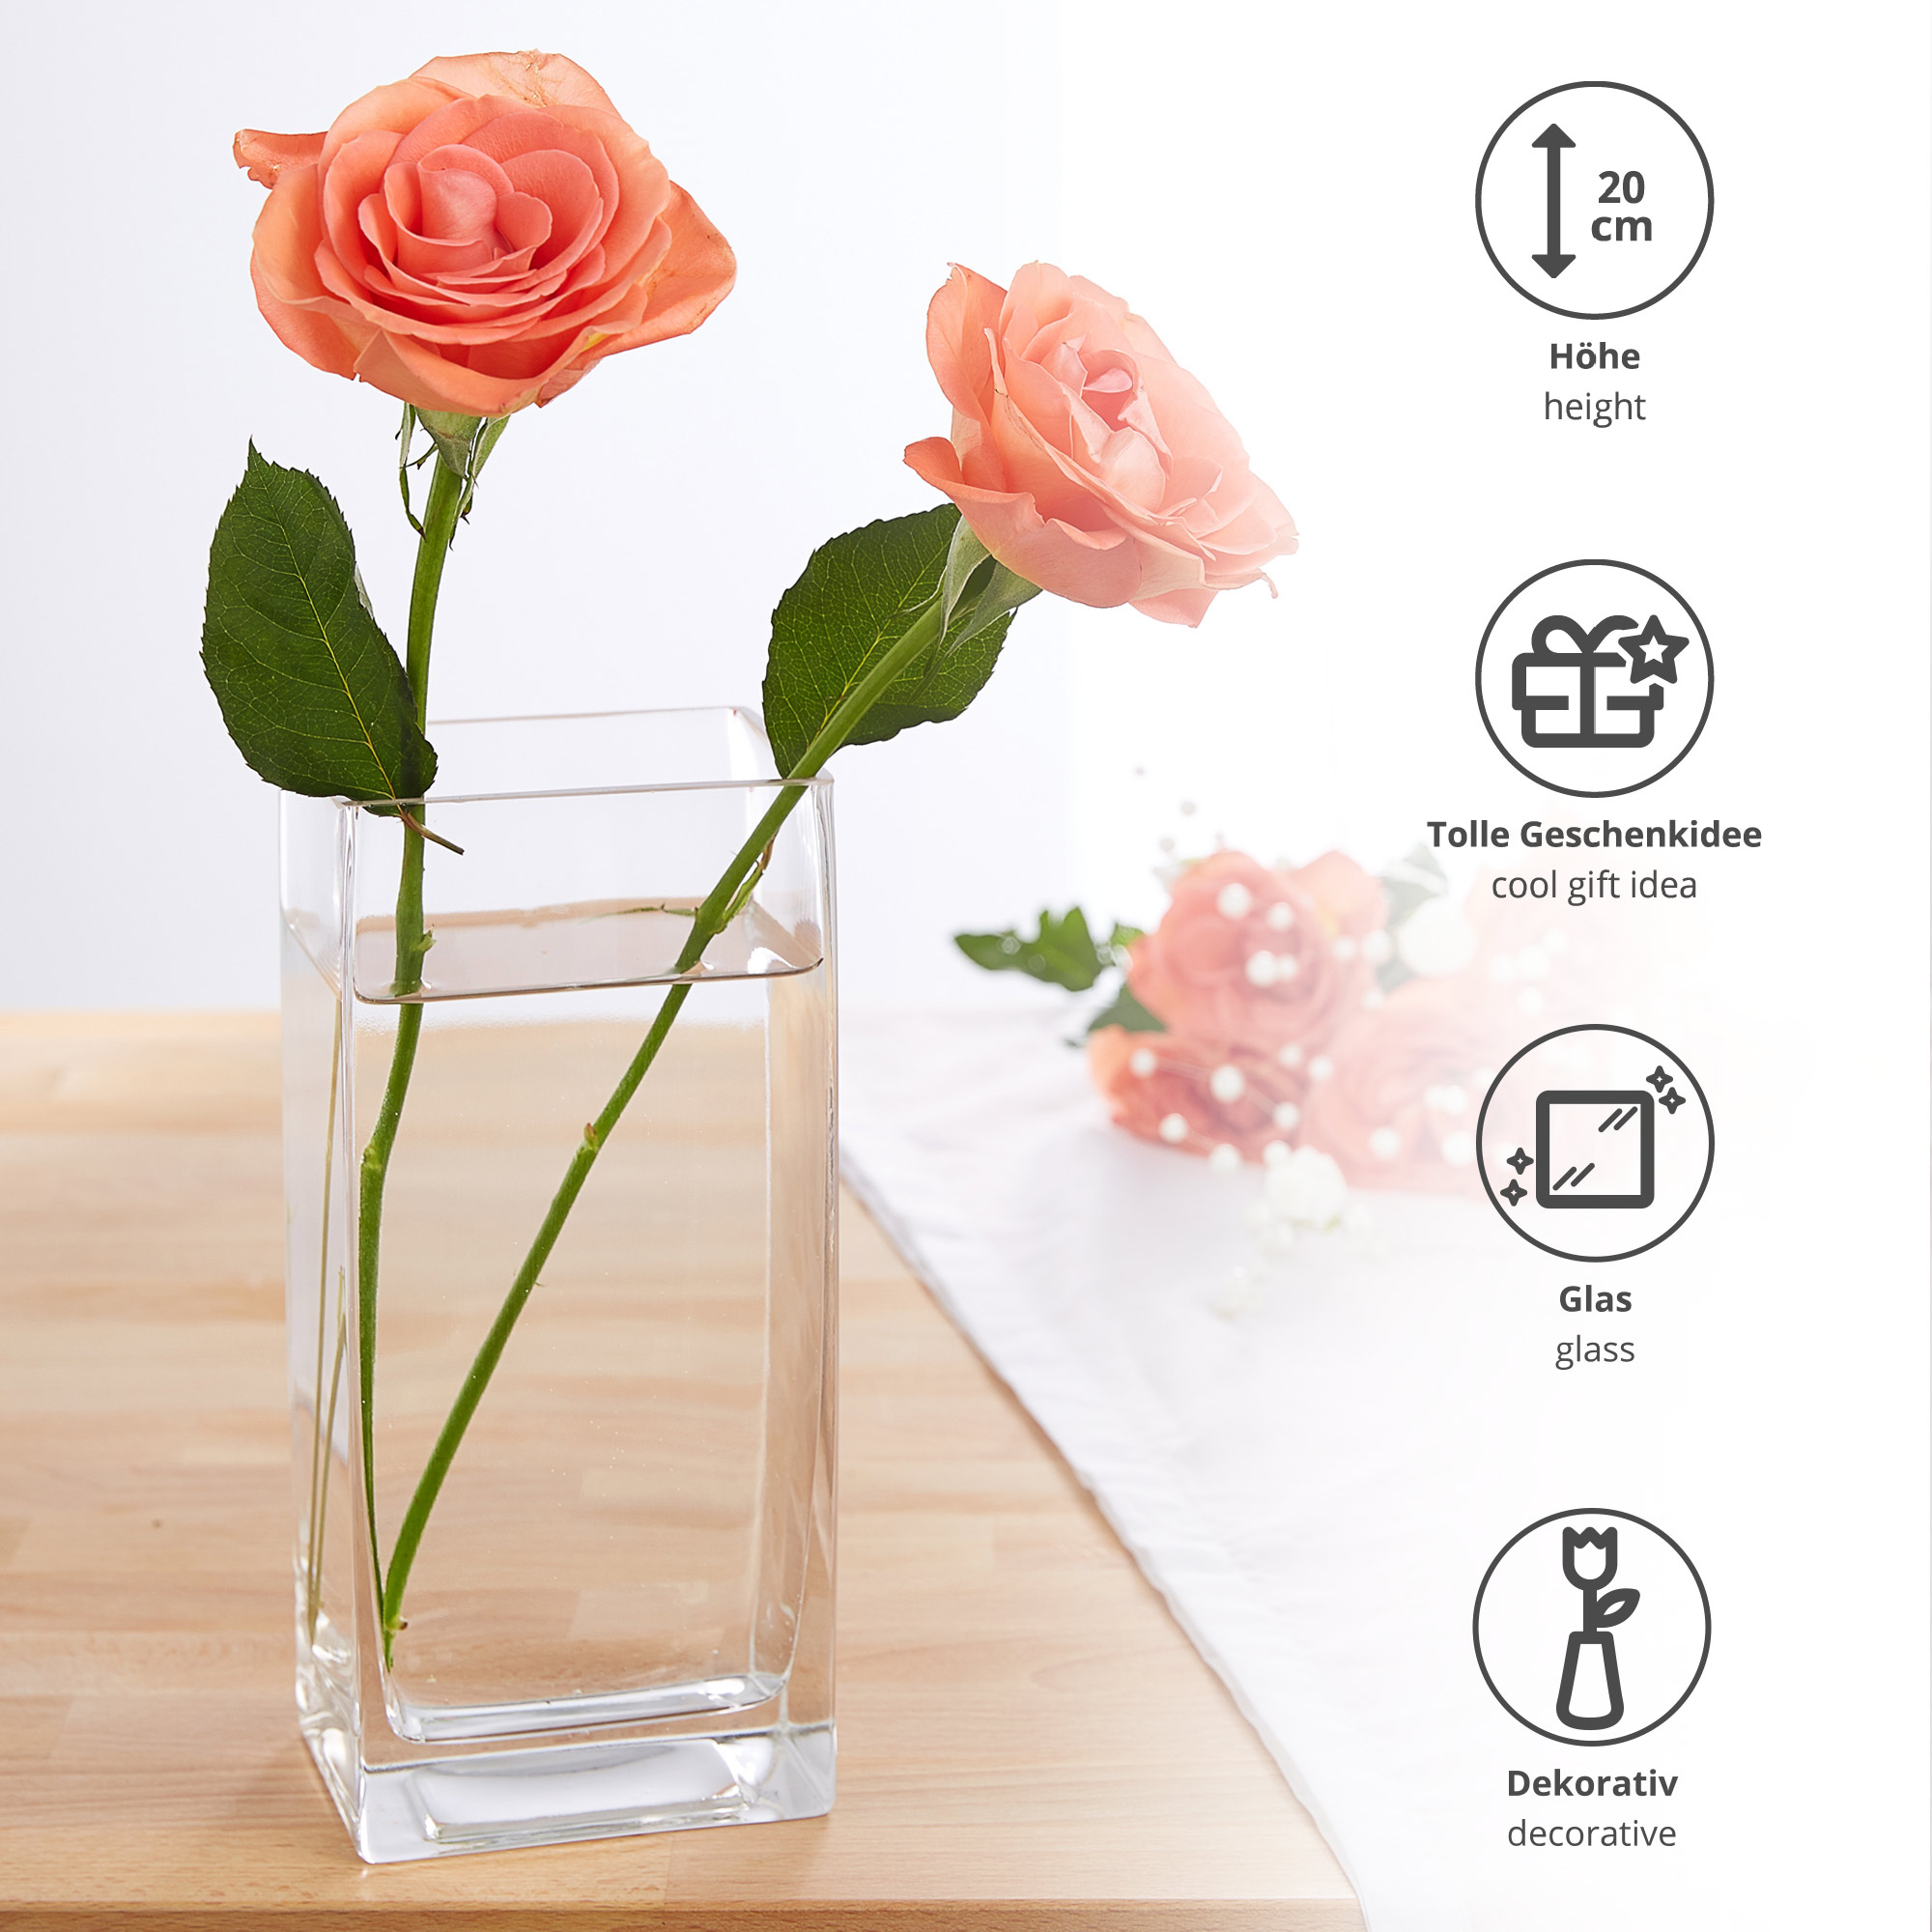 Eckige Vase - Glas Blumenvase 0006-0019-EU-0000 - 3